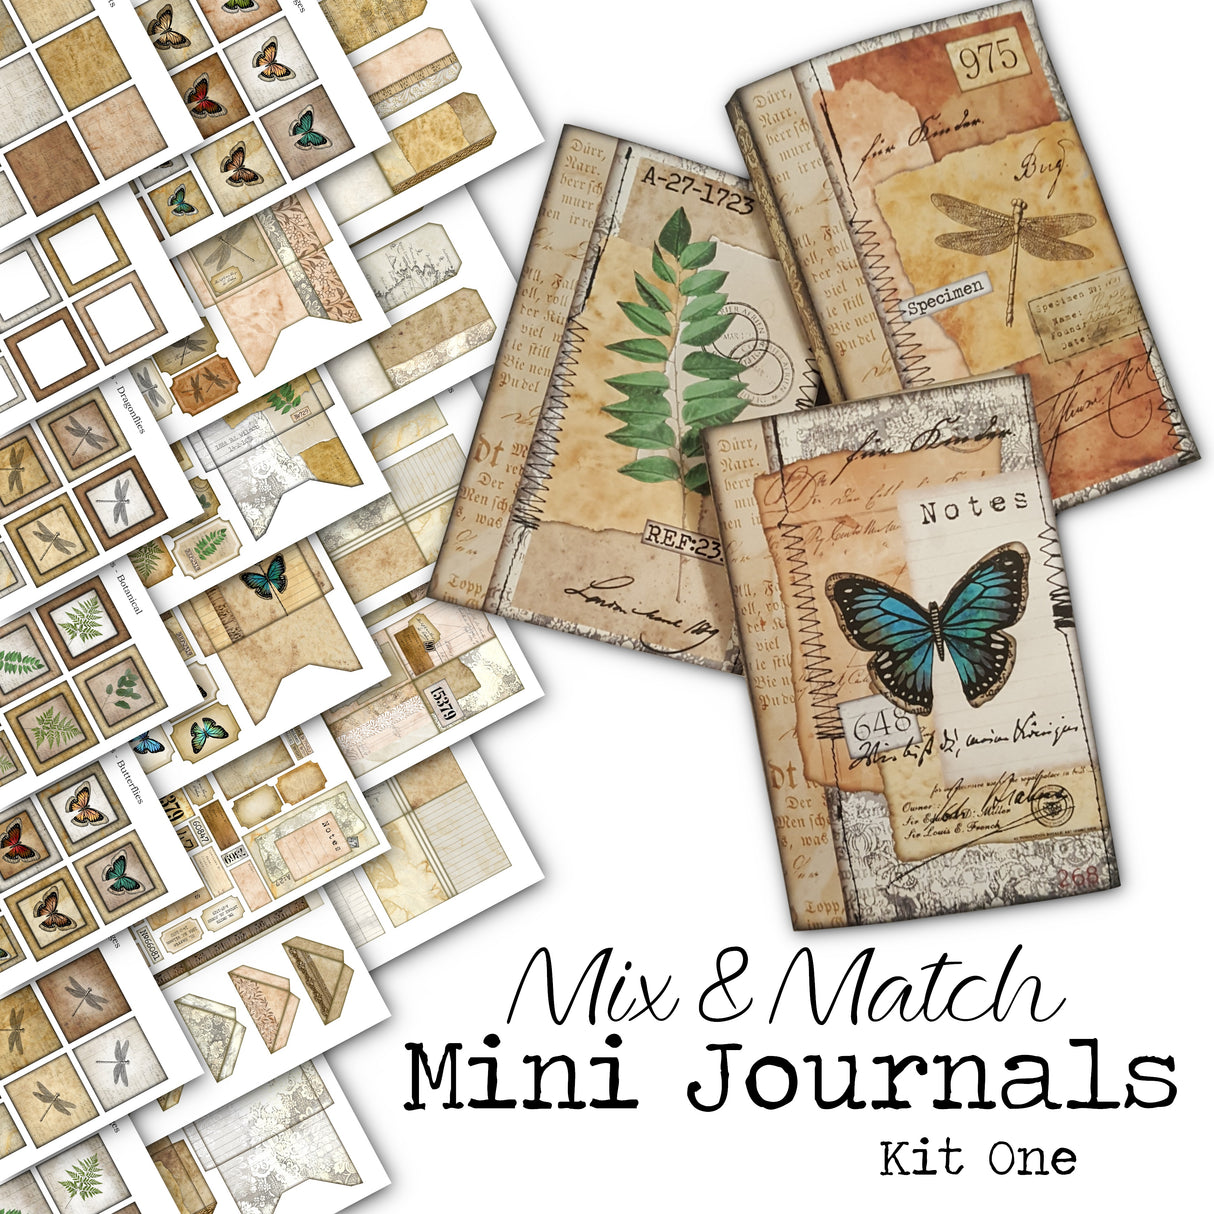 Mix & Match Mini Journals Kit One - DI-10026 - Digital Download